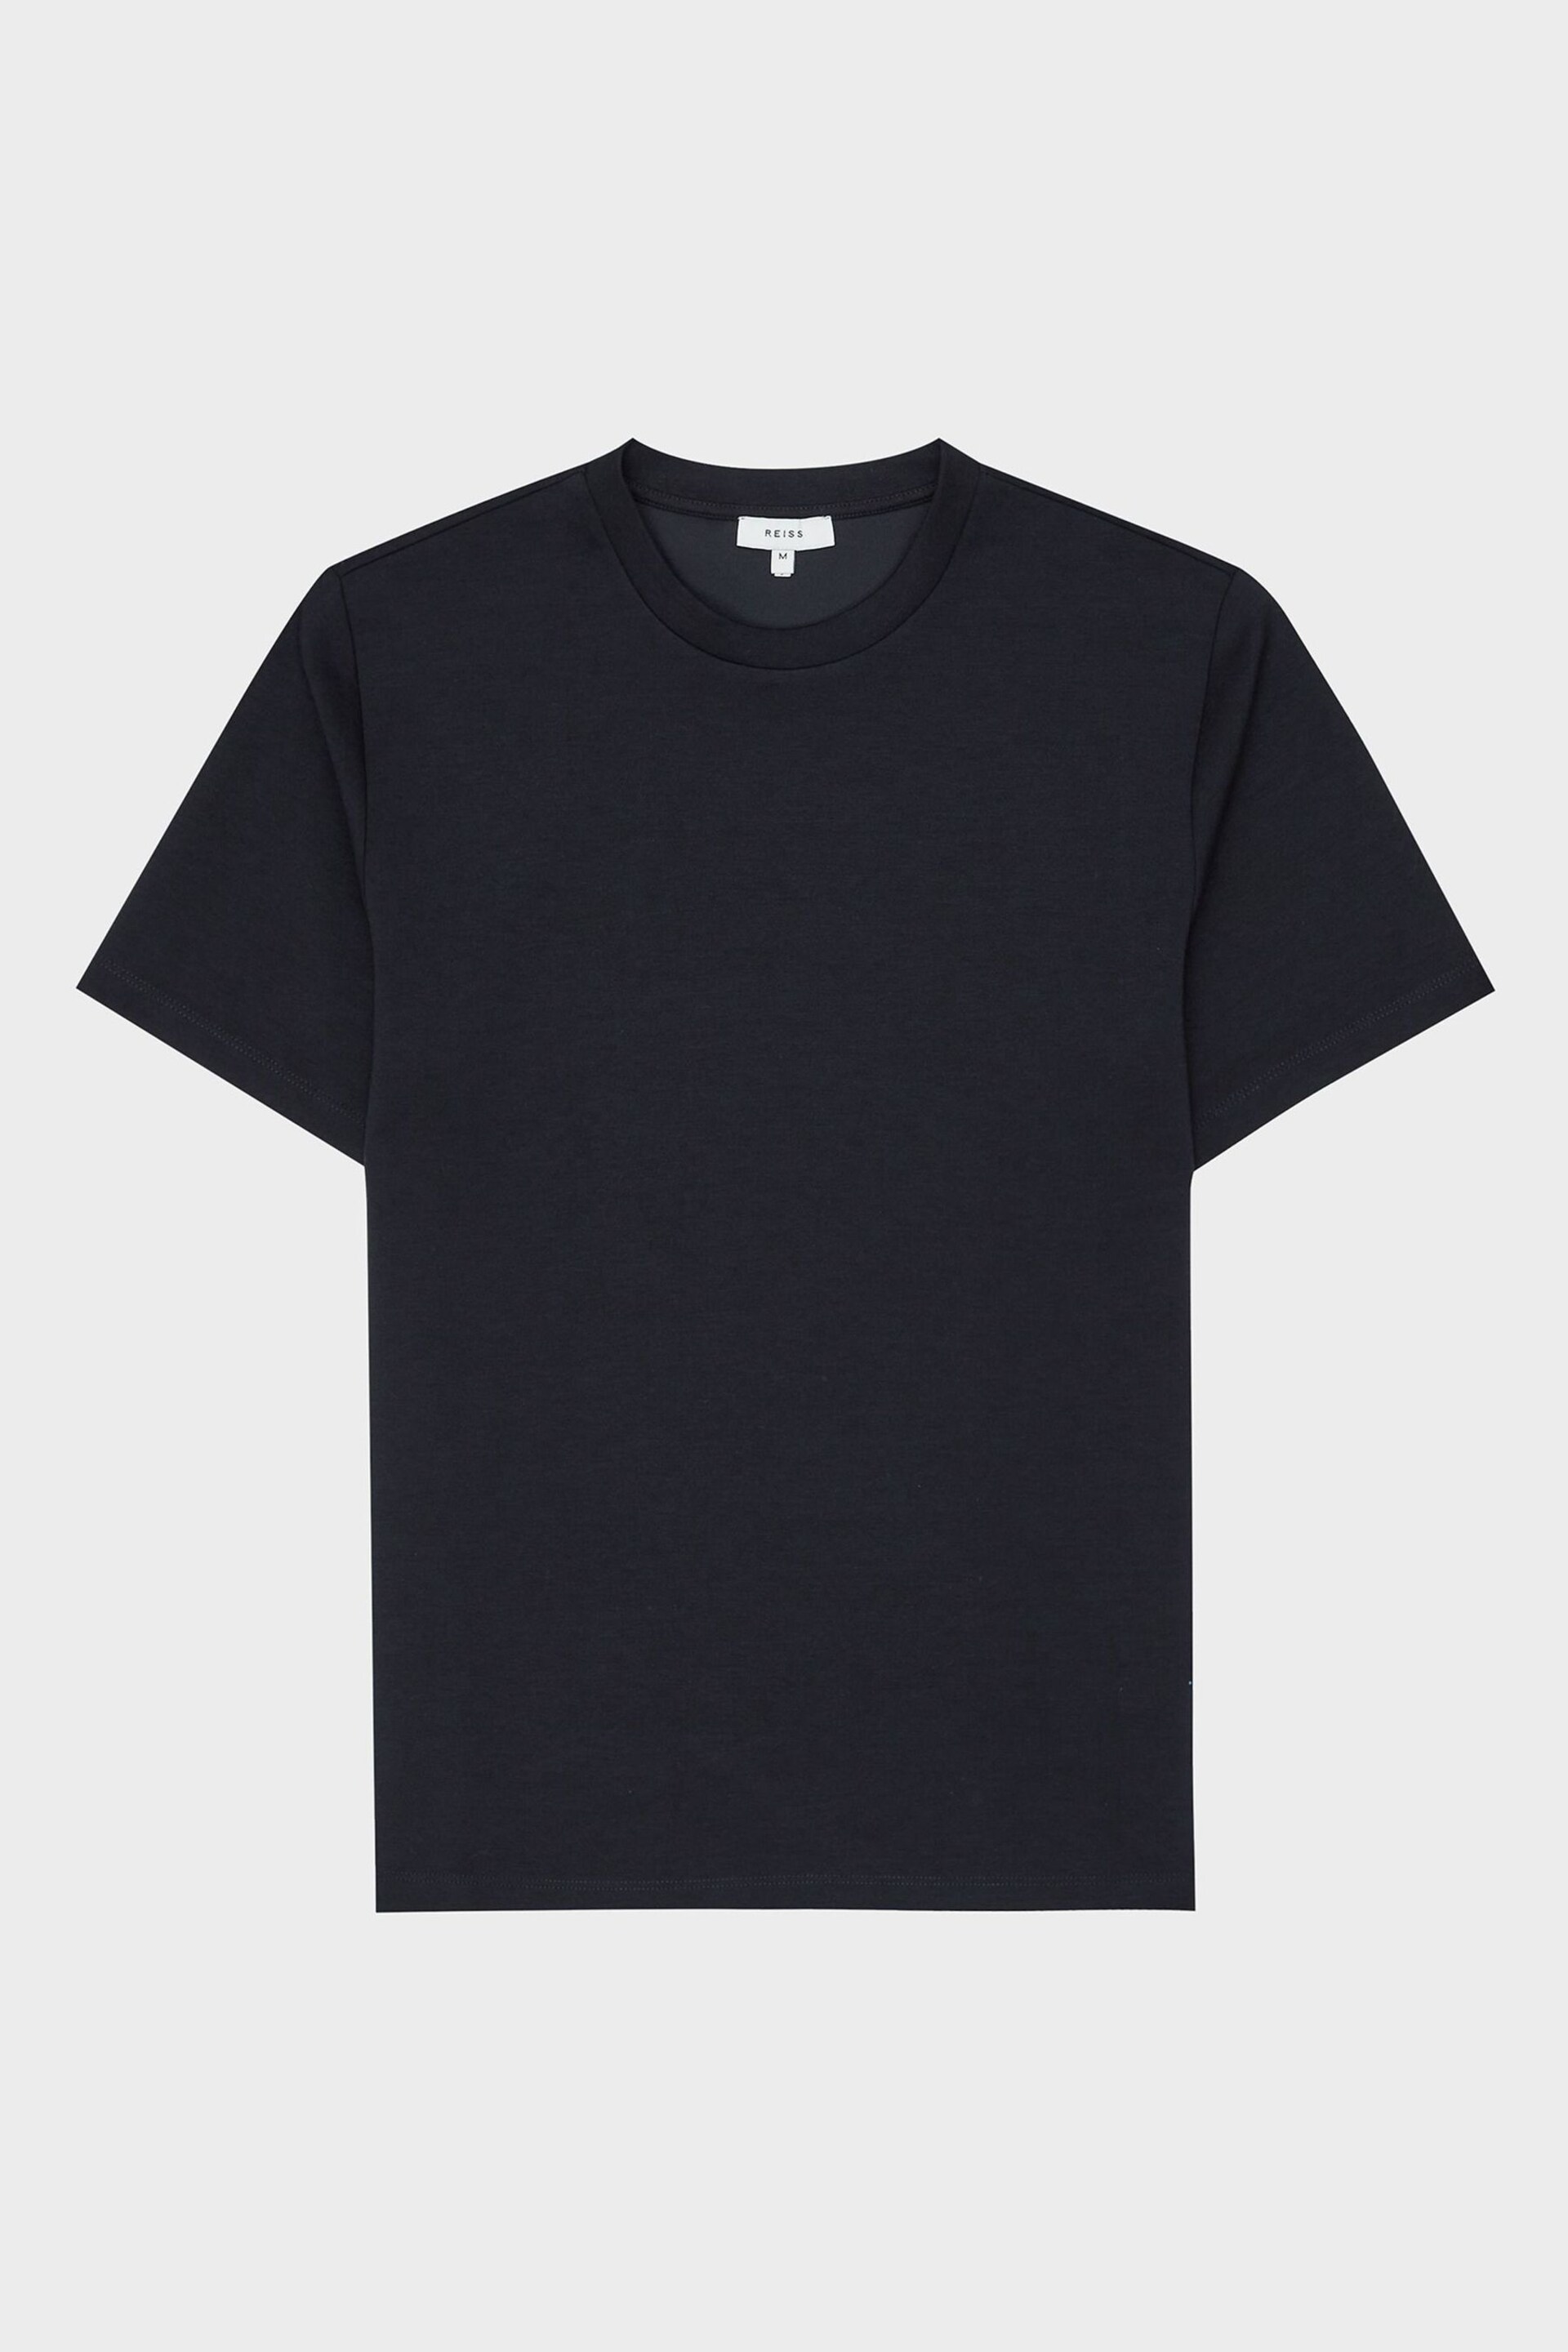 Reiss Bradley Melange Crew Neck T-Shirt - Image 2 of 3